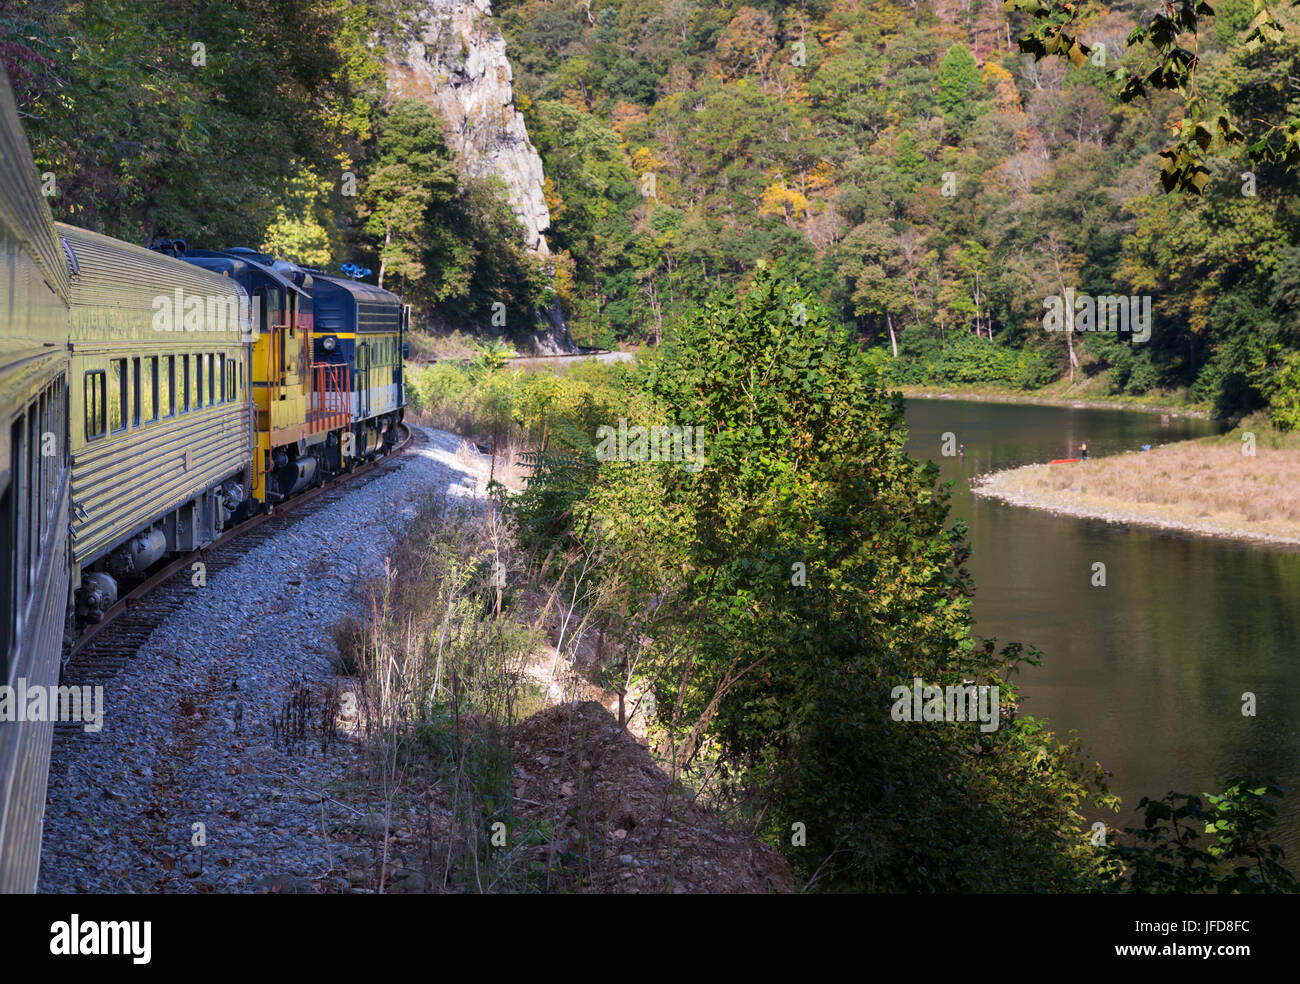 Motore diesel in viaggio in treno verso gorge Foto Stock